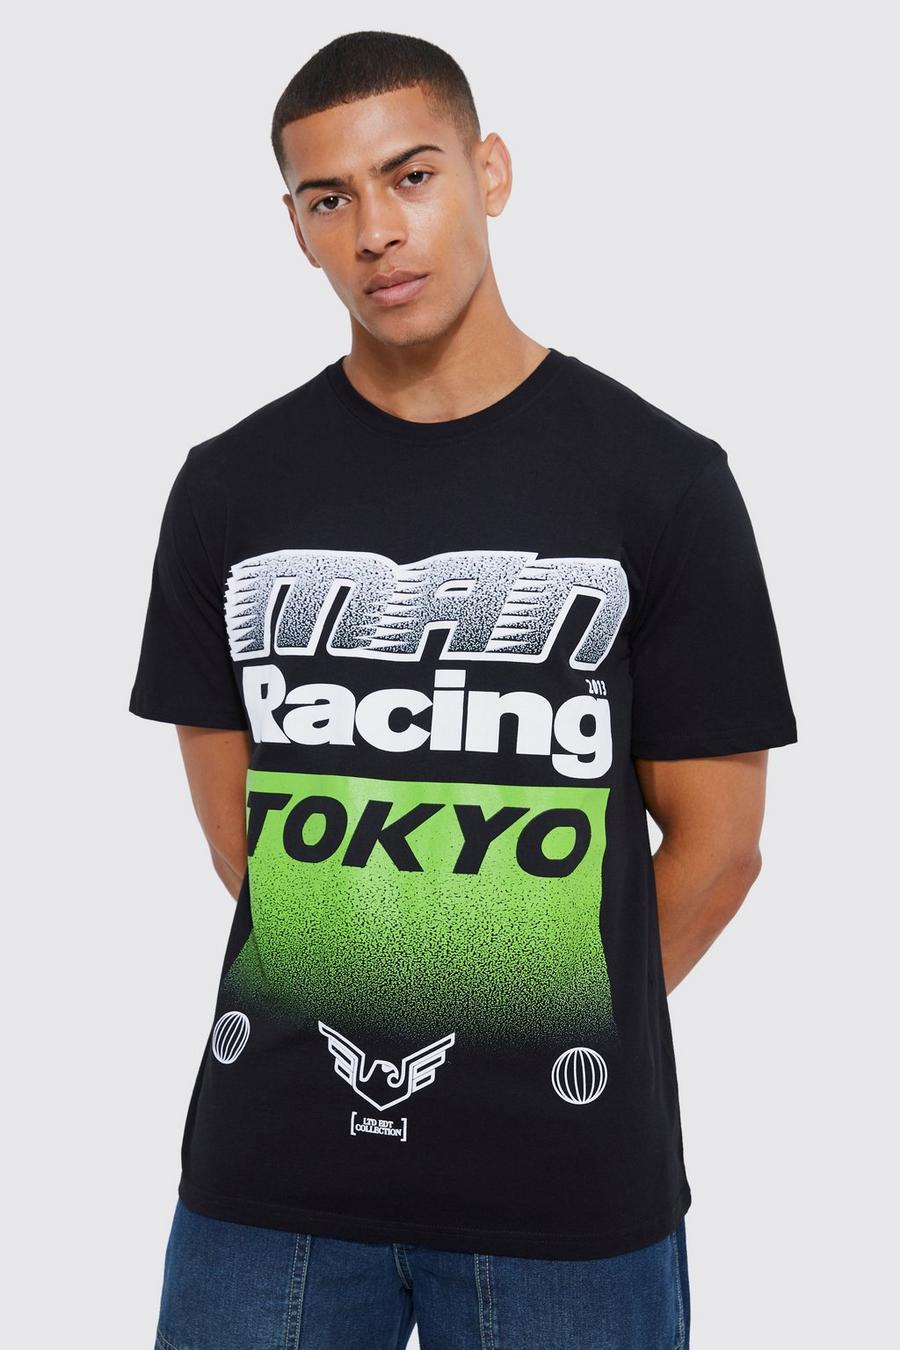 Camiseta con estampado de Tokyo Moto Racing, Black